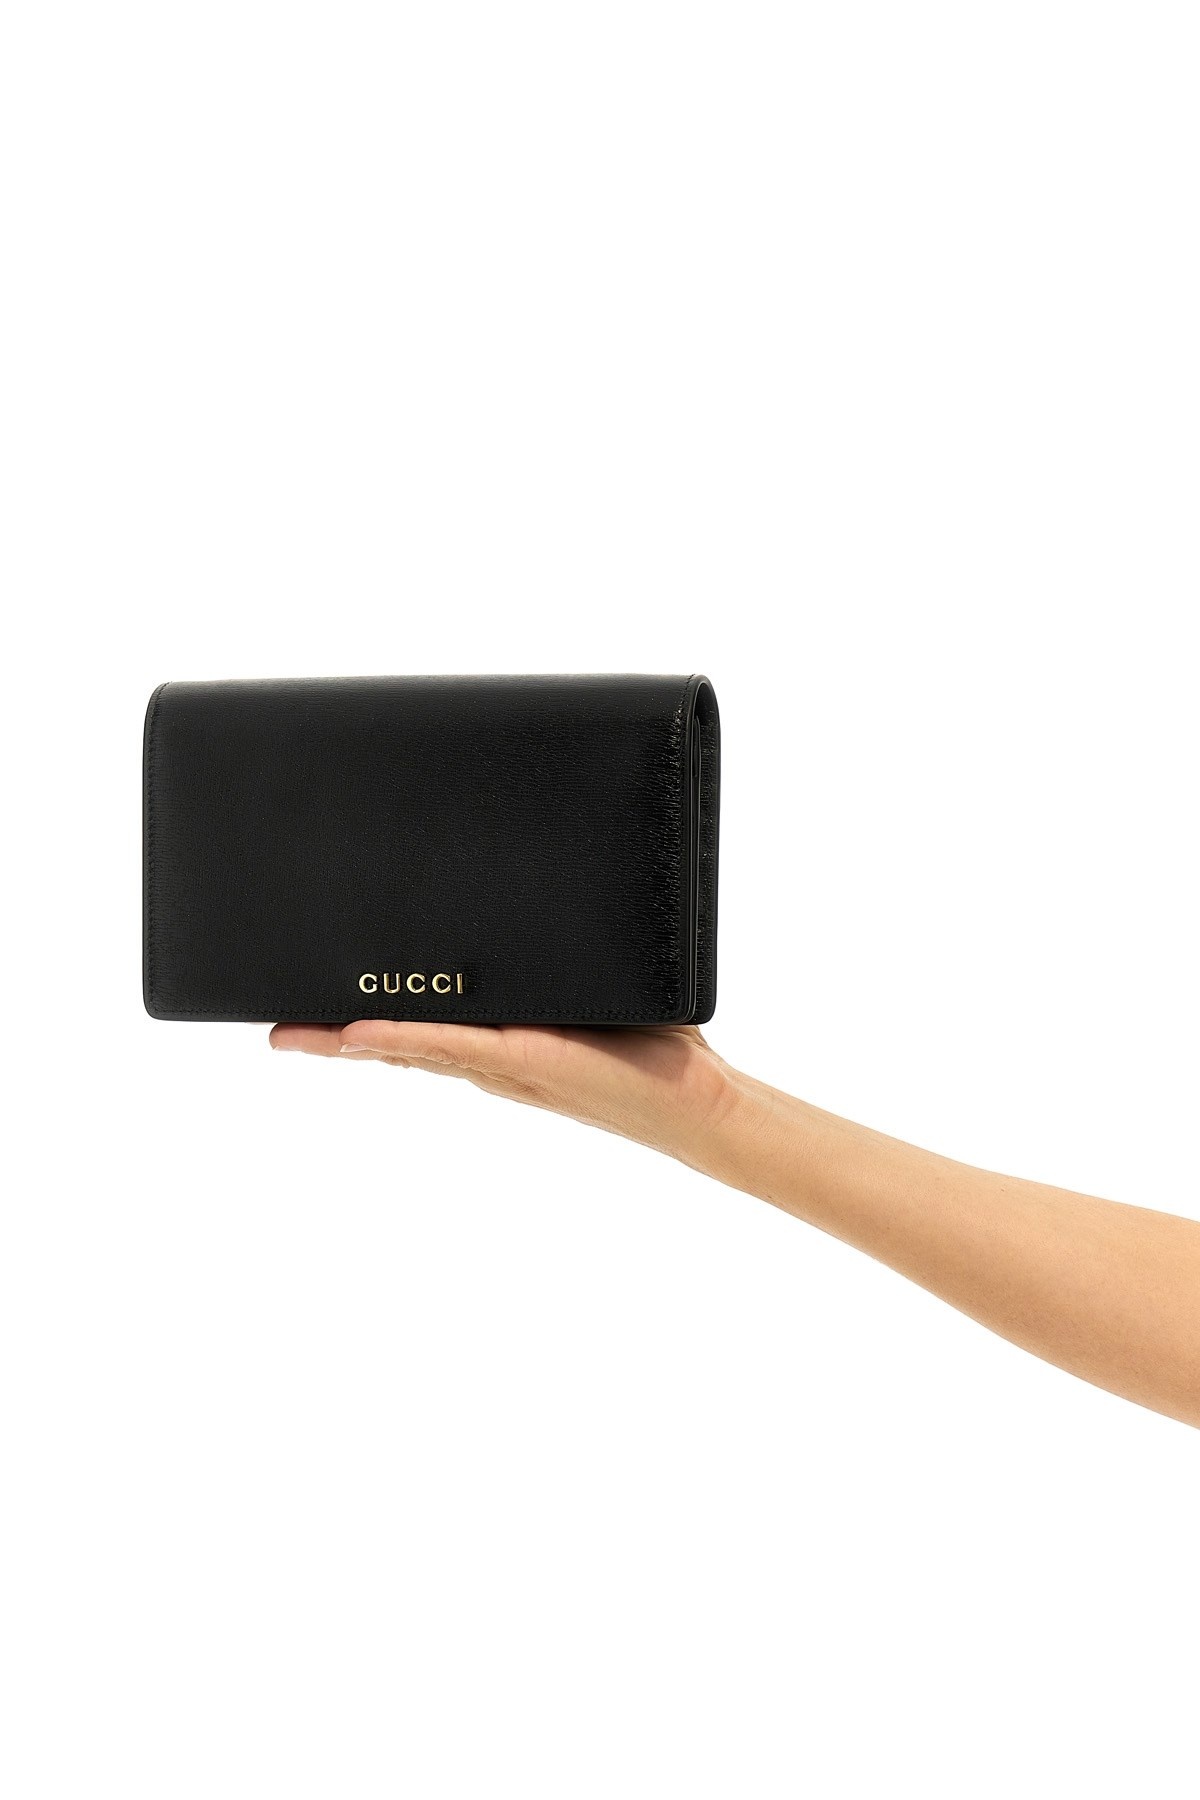 'Gucci' wallet - 2